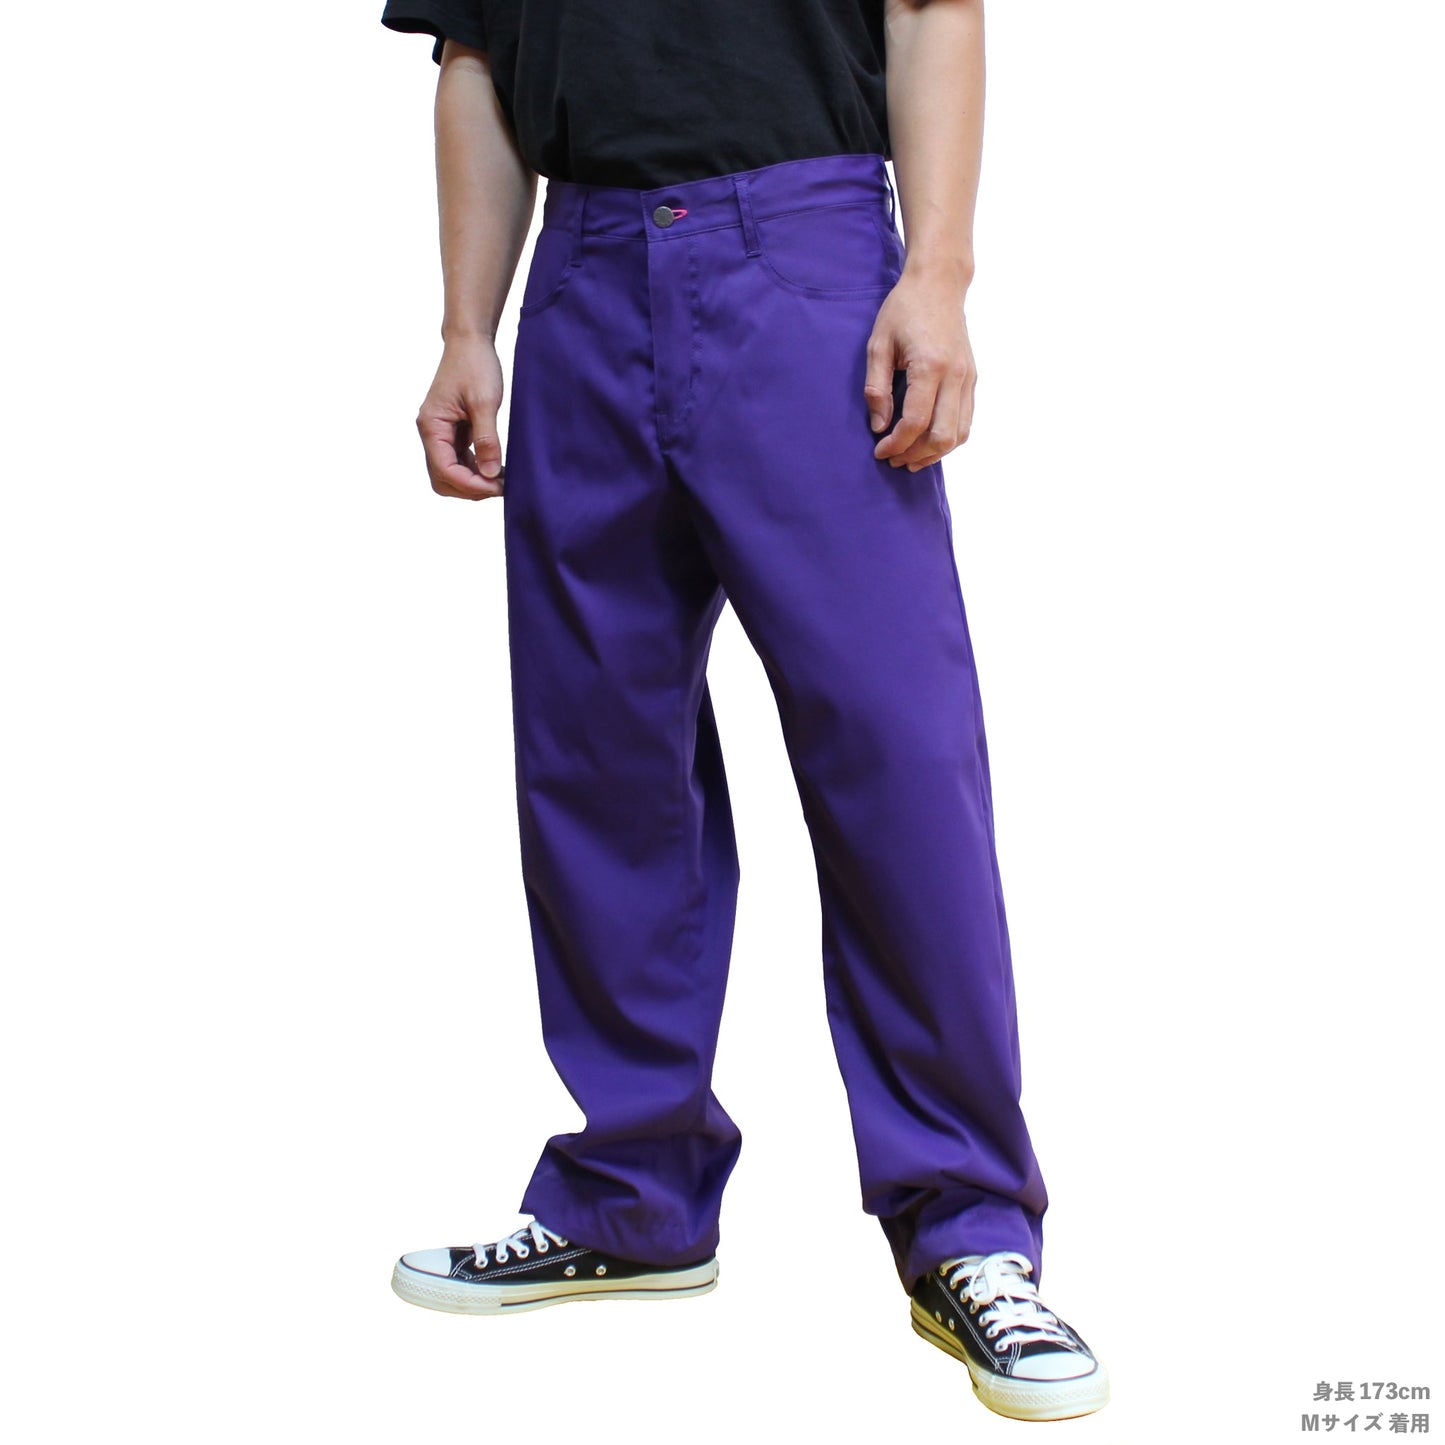 iggy 裤子 图标 紫色